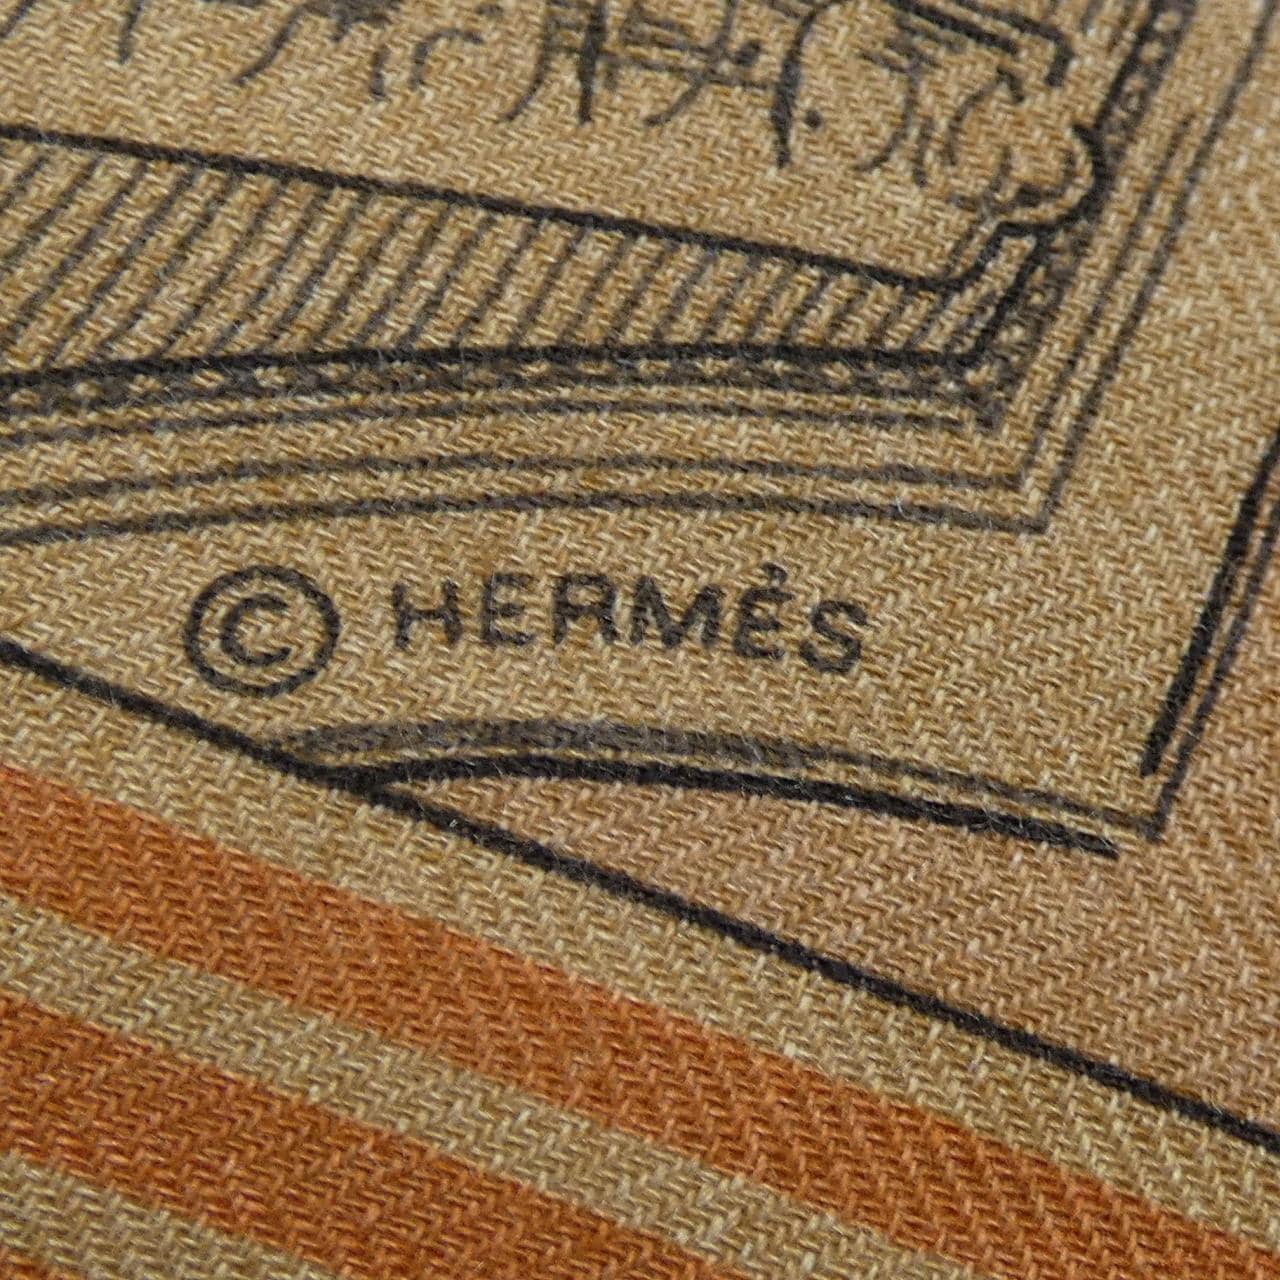 エルメス HERMES ショール